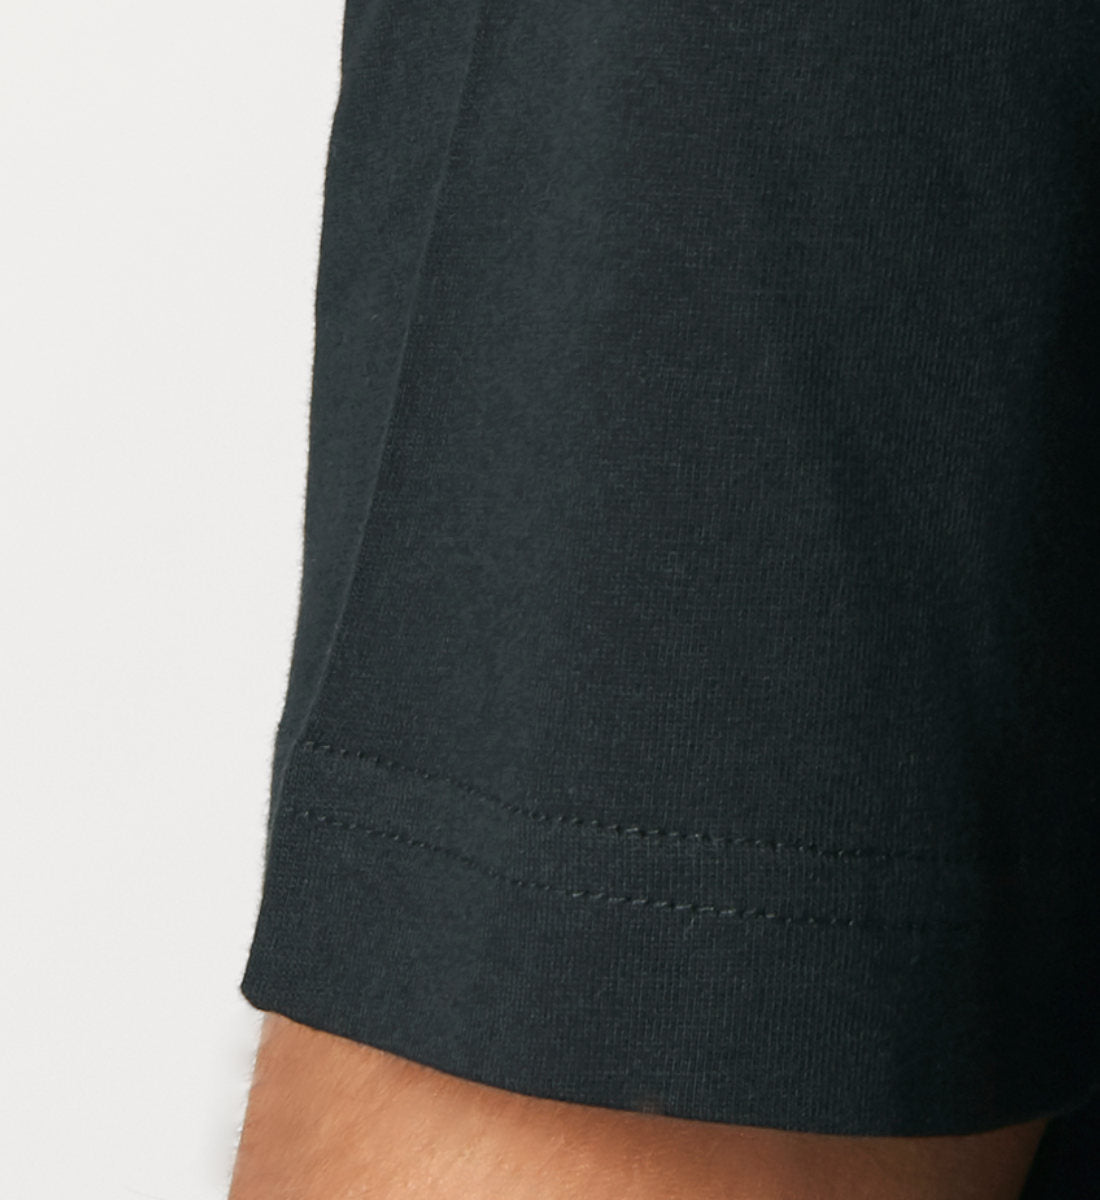 Schwarzes T-Shirt relaxed fit unisex für Frauen und Männer bedruckt mit dem Design der Roger Rockawoo Kollektion BMX Tiny